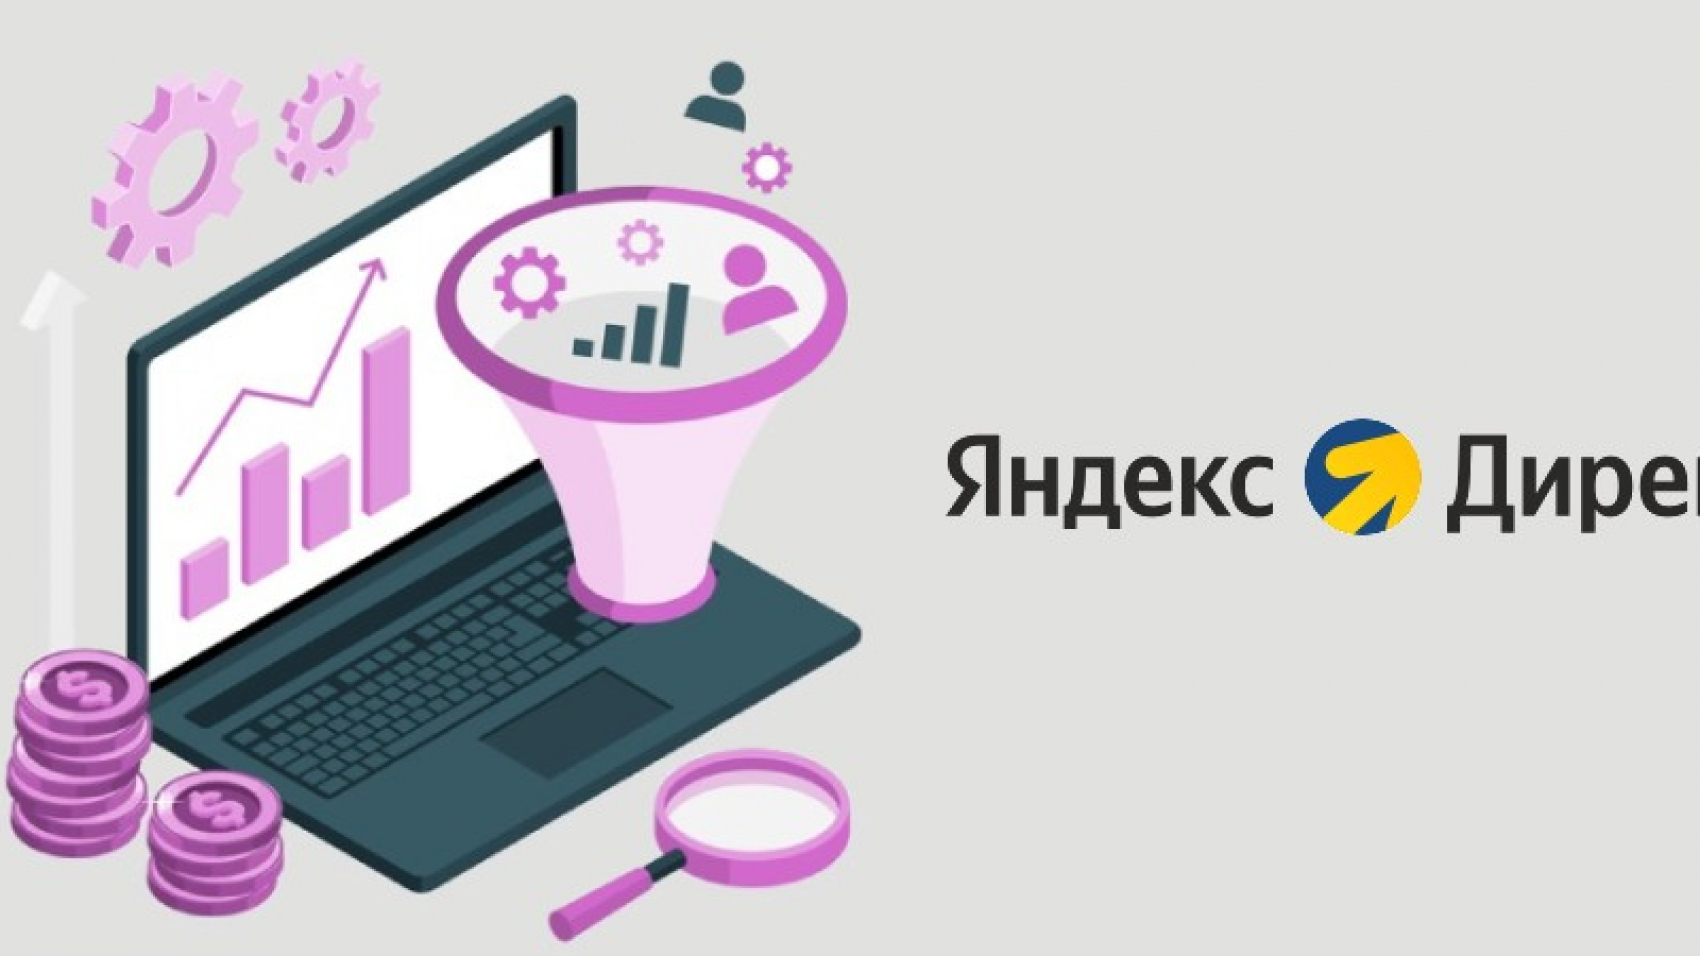 Яндекс.Директ представил инструмент для адаптации стратегий к сезонному спросу